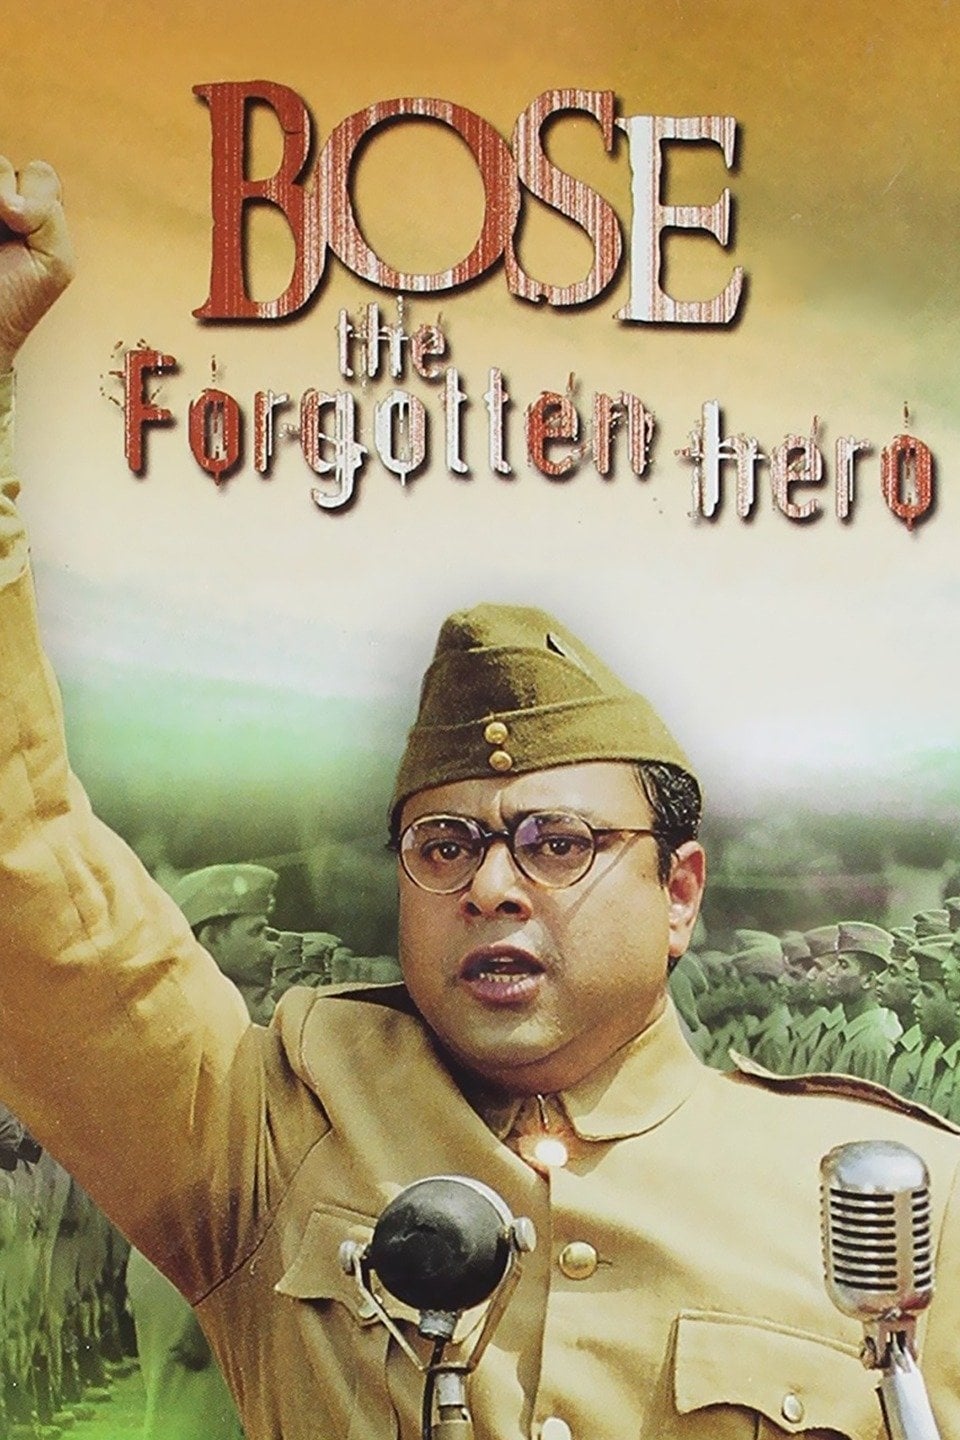 Netaji Subhas Chandra Bose: The Forgotten Hero (2005)